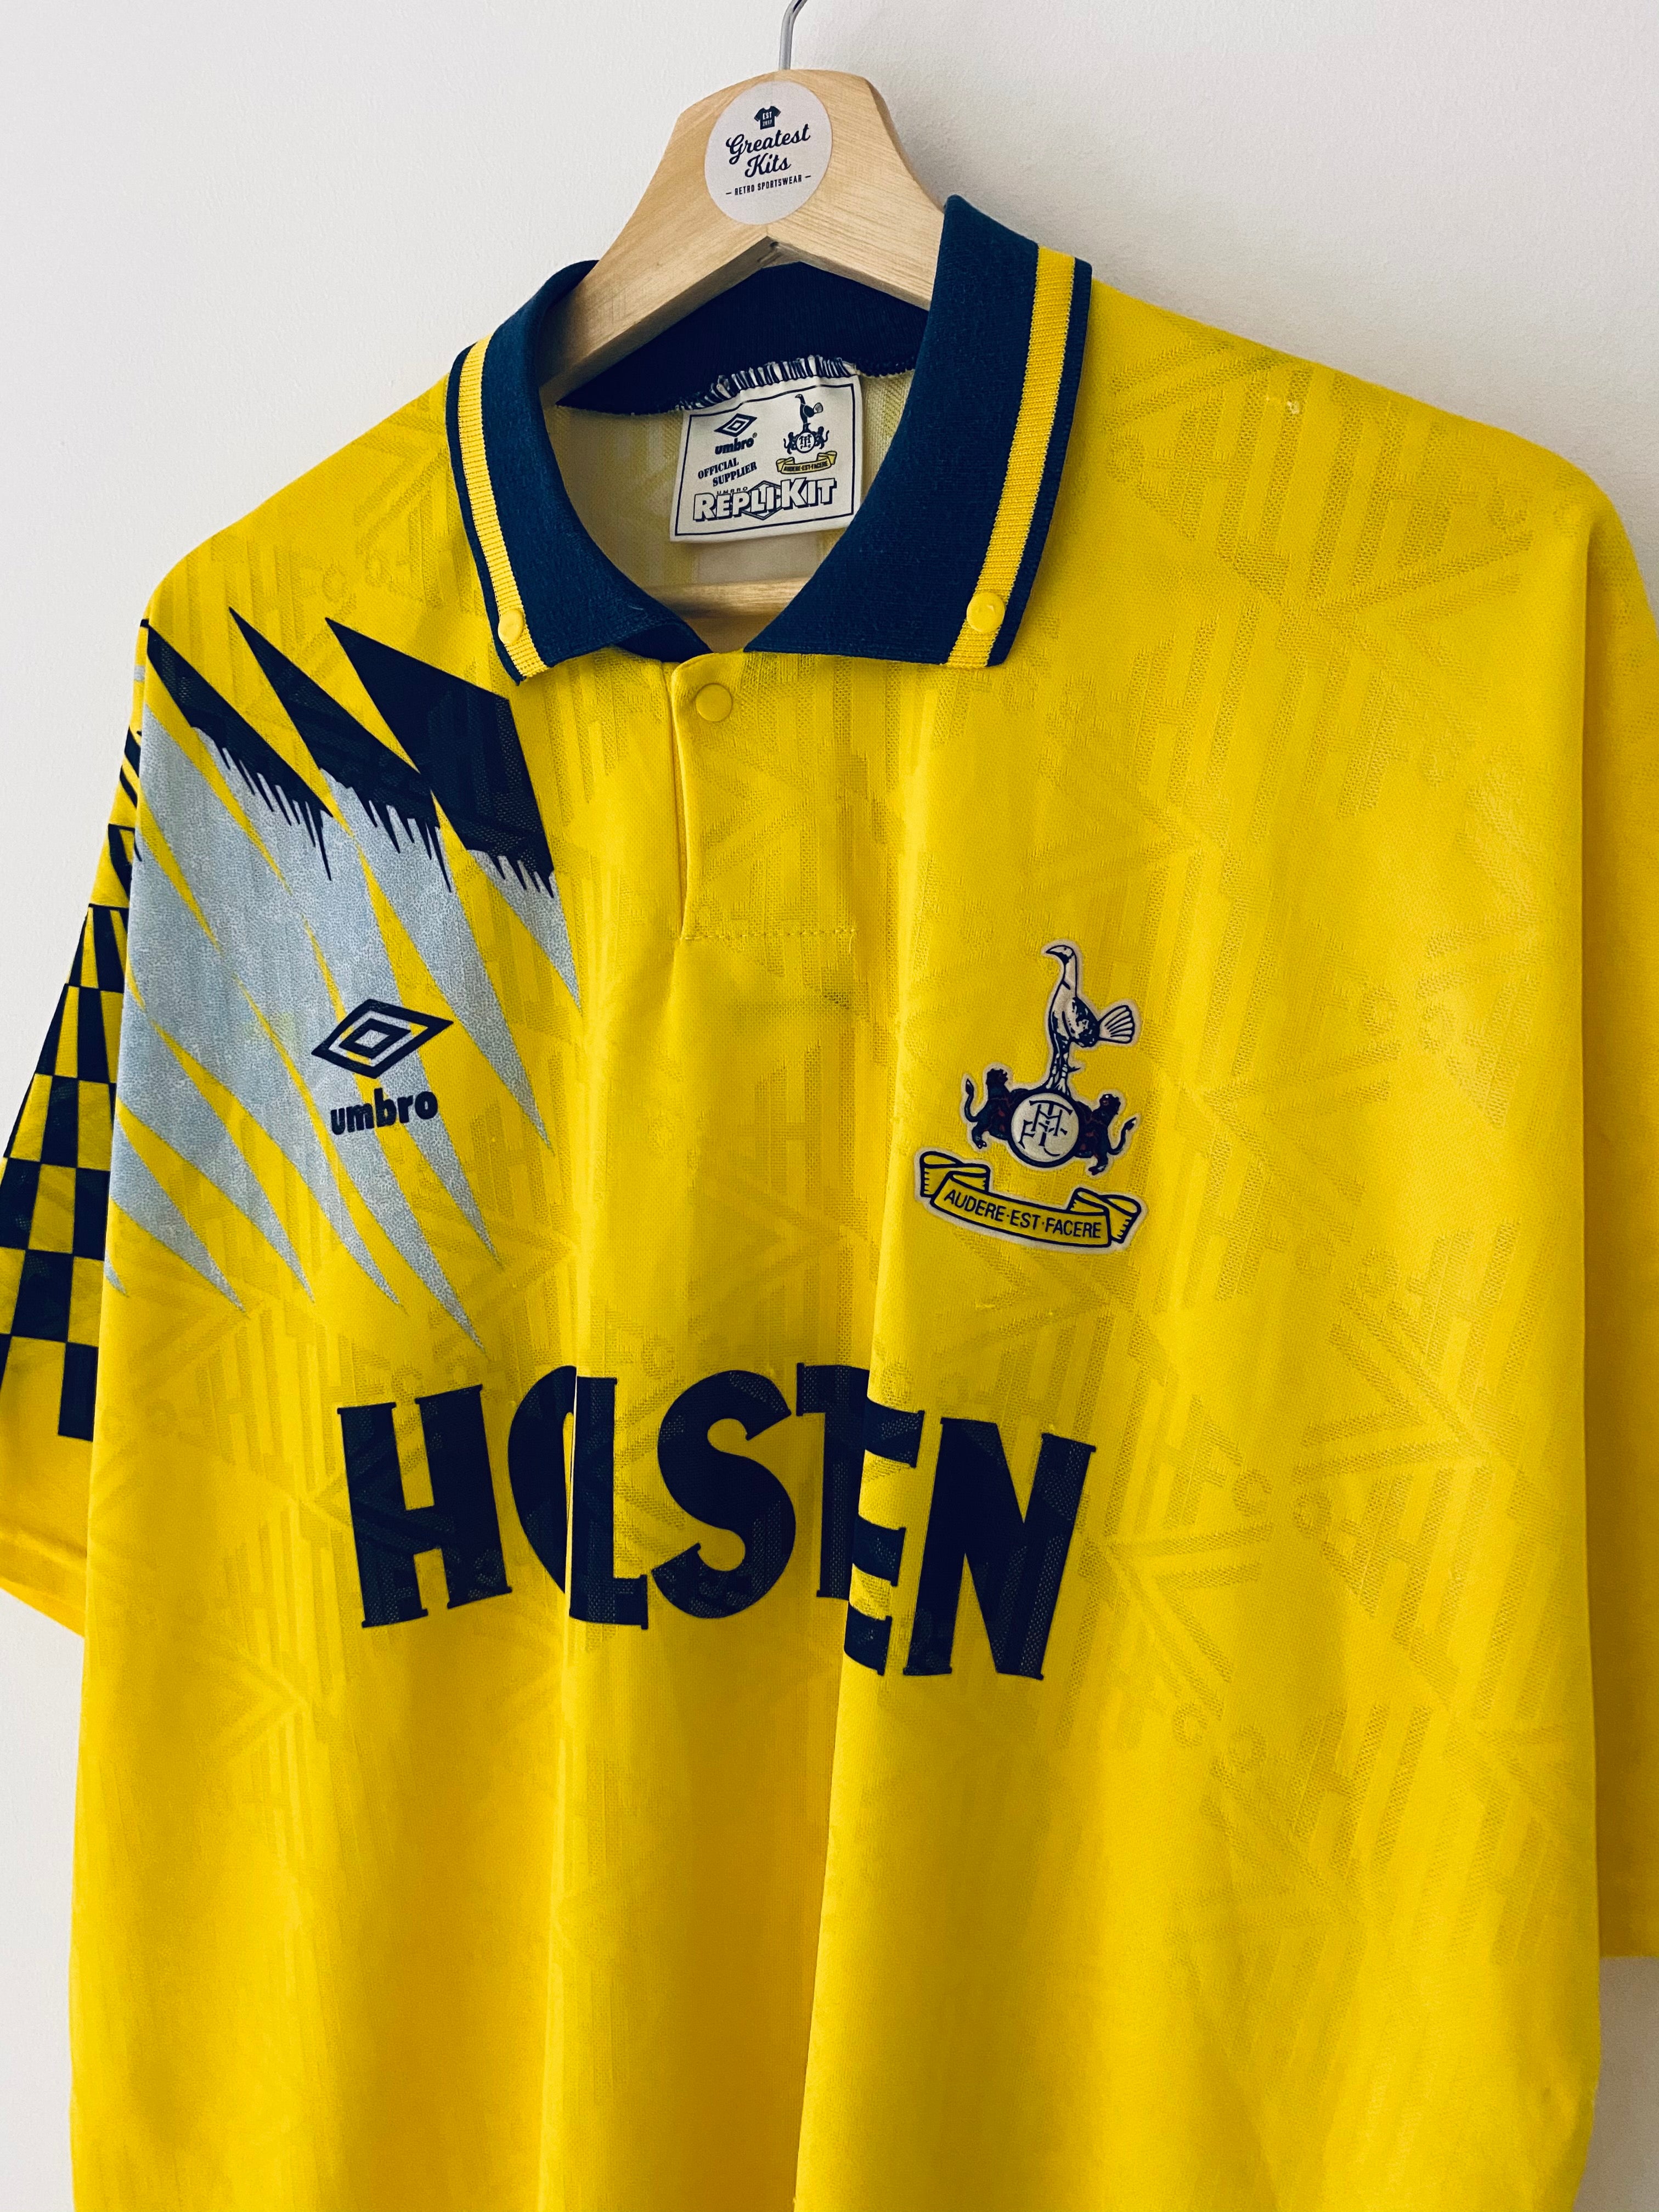 1991/95 Tottenham Hotspur Away Shirt (XL) 8.5/10